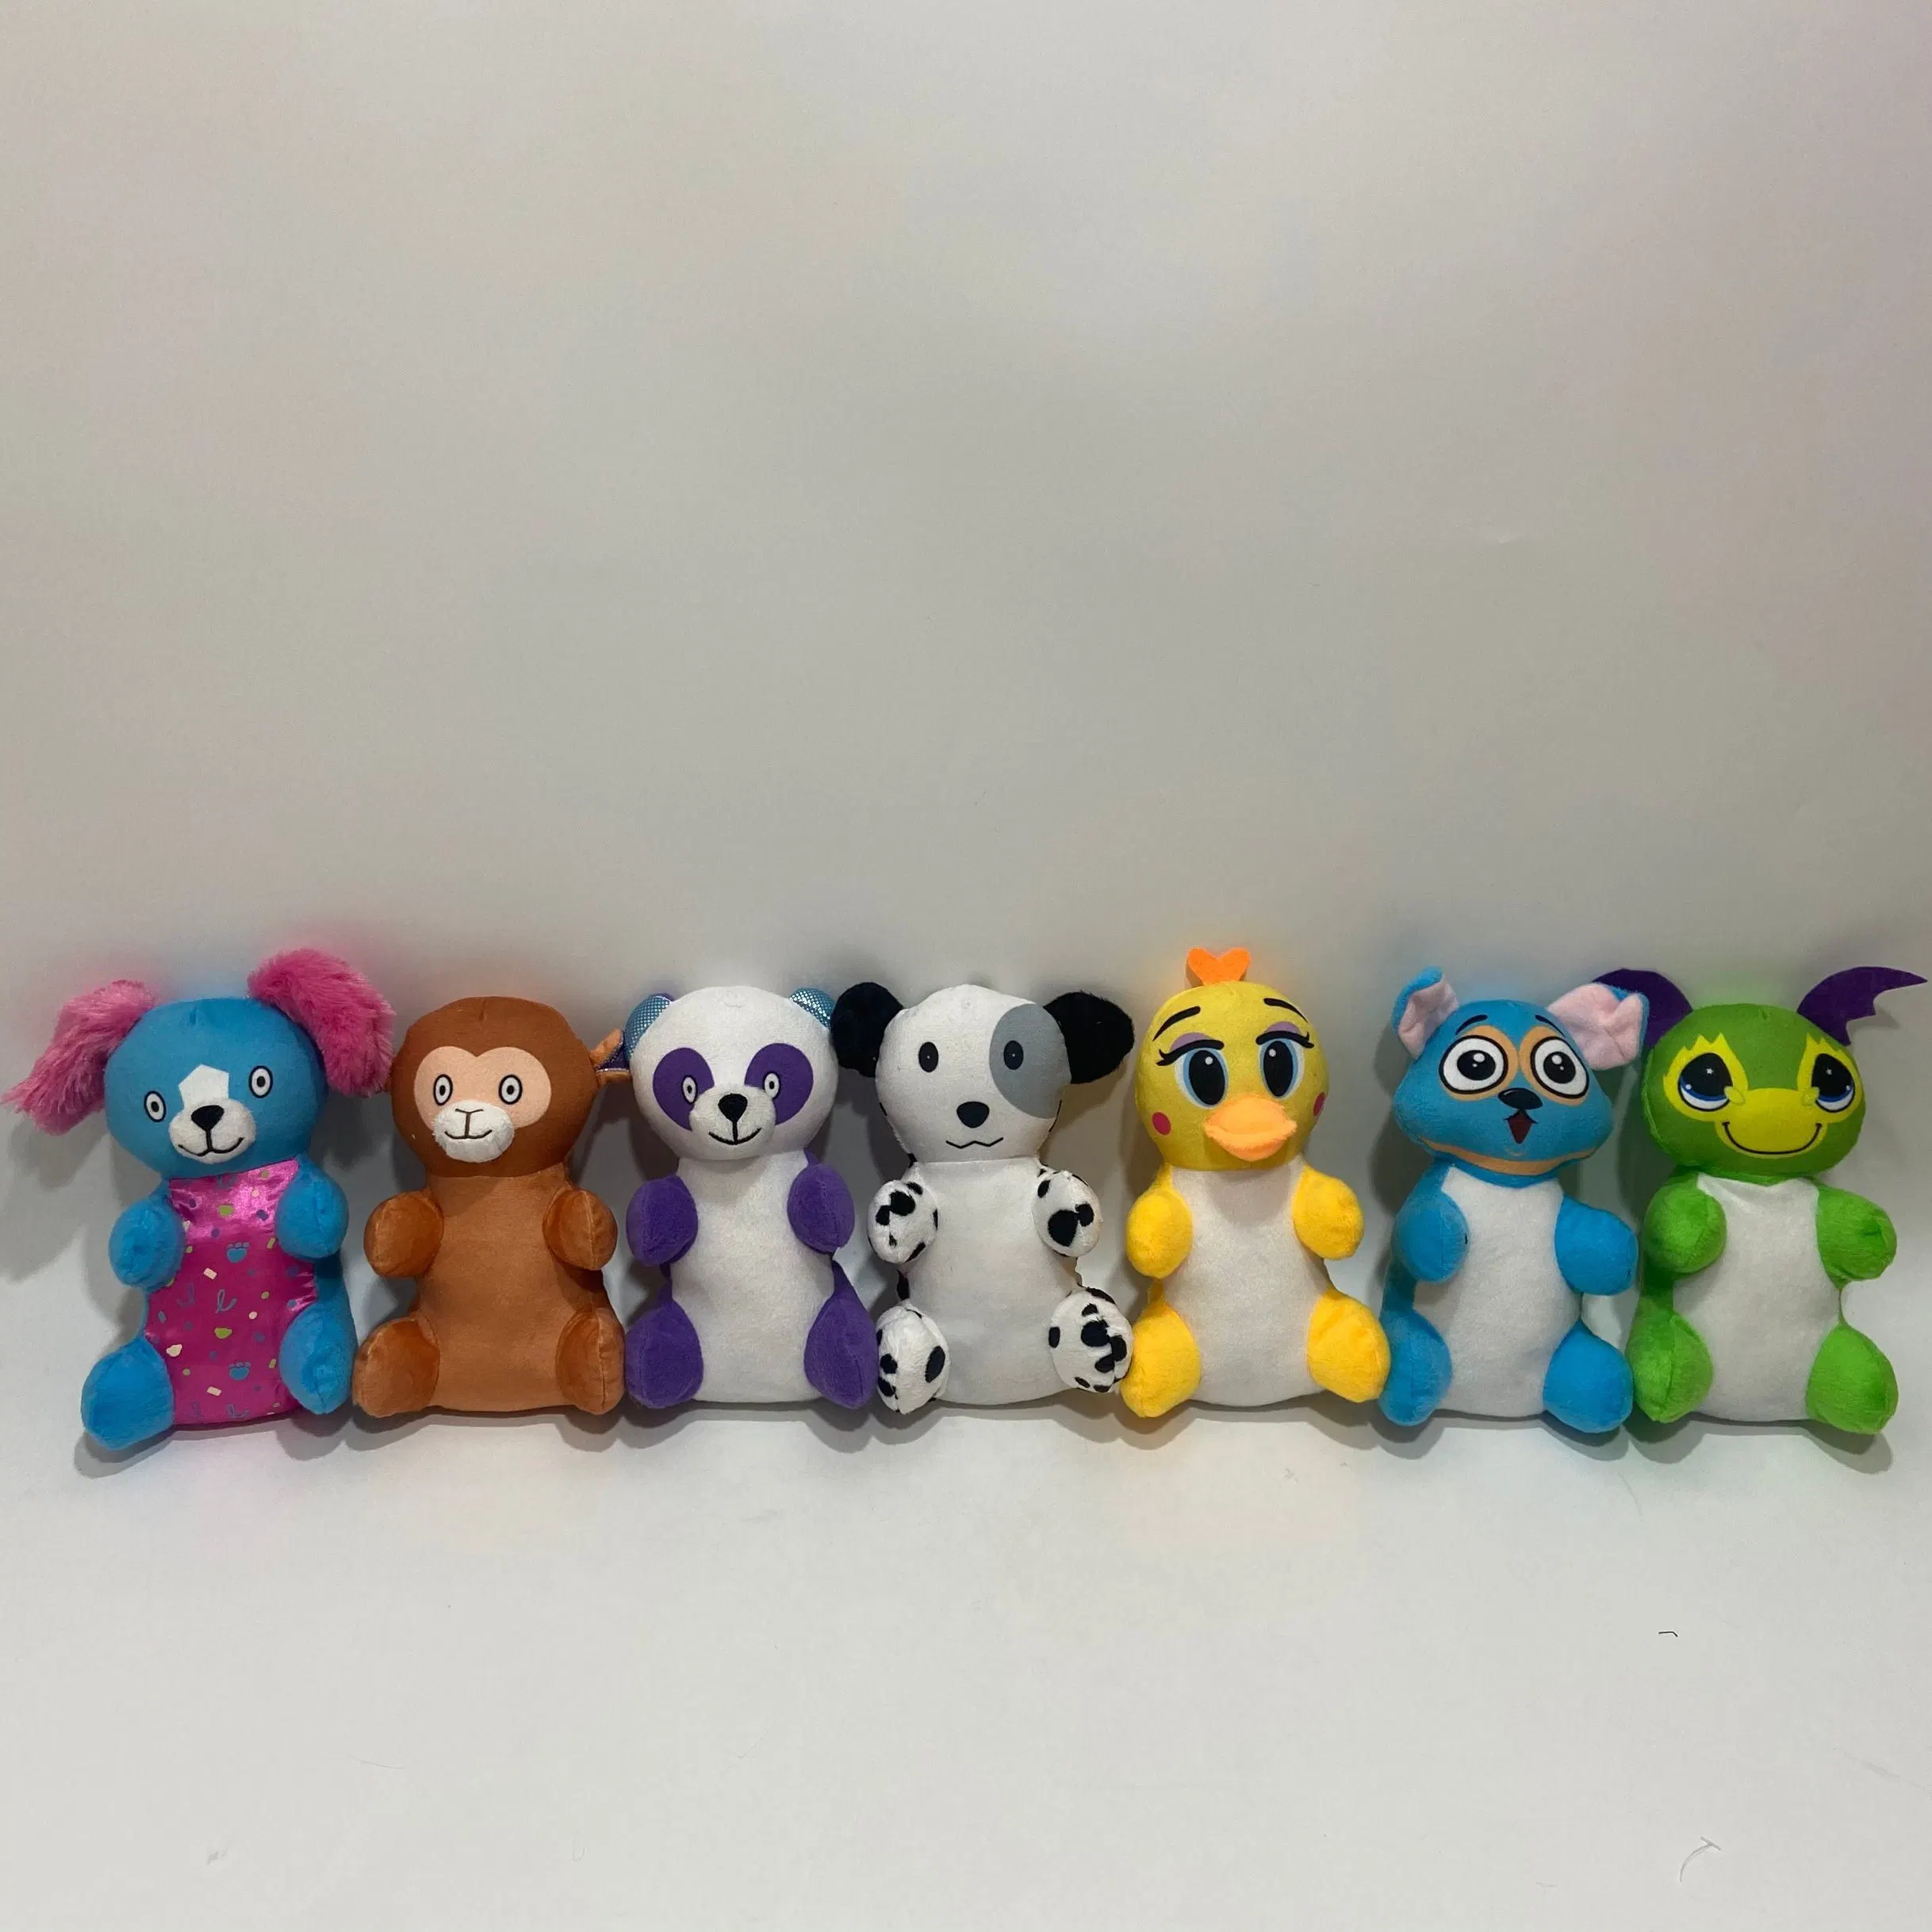 Los animales de peluche barato de 20 cm surtido de juguetes, muñecos de peluche a granel para los niños Cotillón